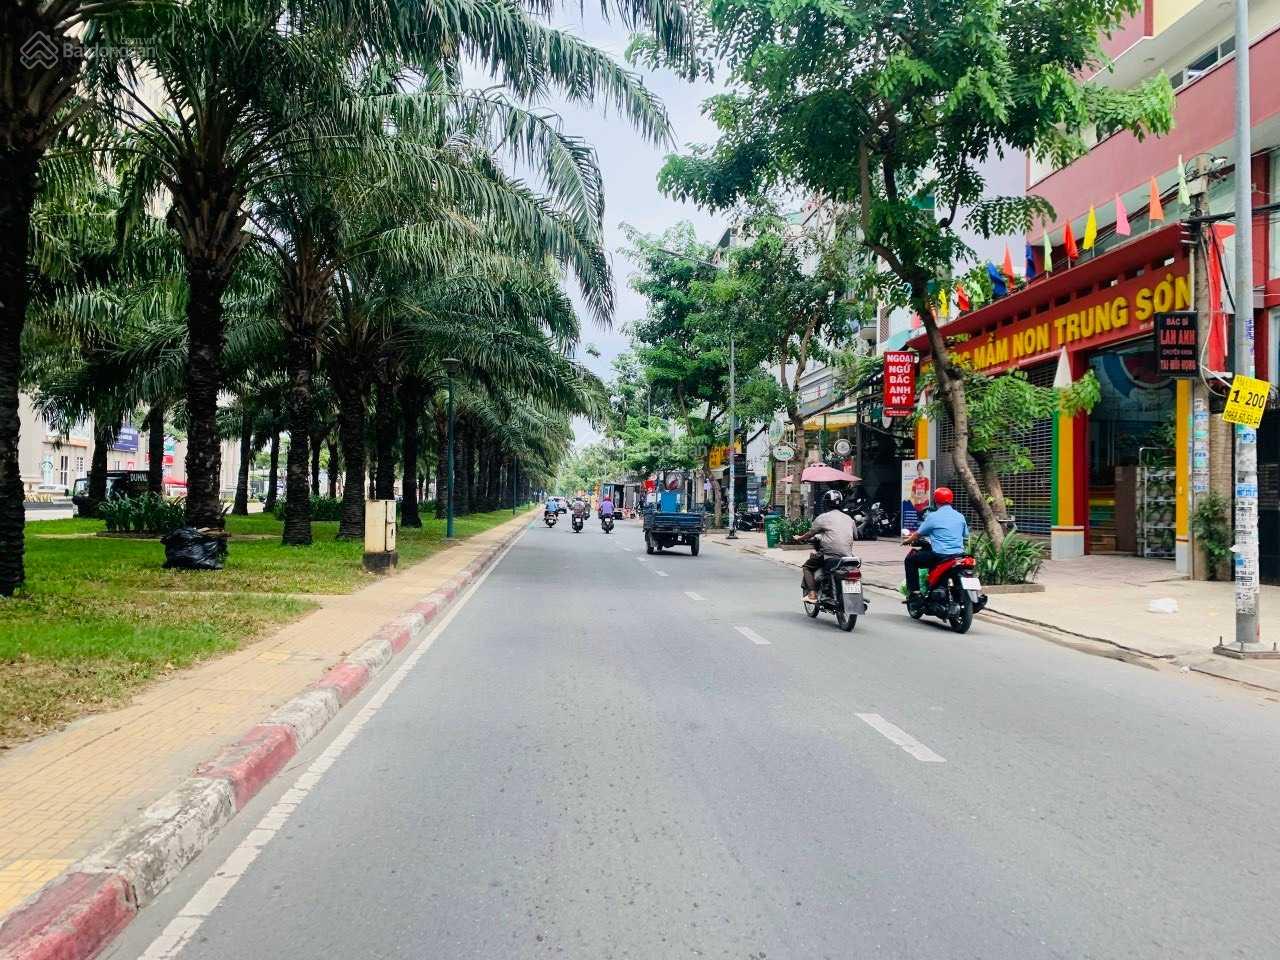 Bán nhà khu dân cư Trung Sơn, huyện Bình Chánh, 200m², Giá 54 tỷ